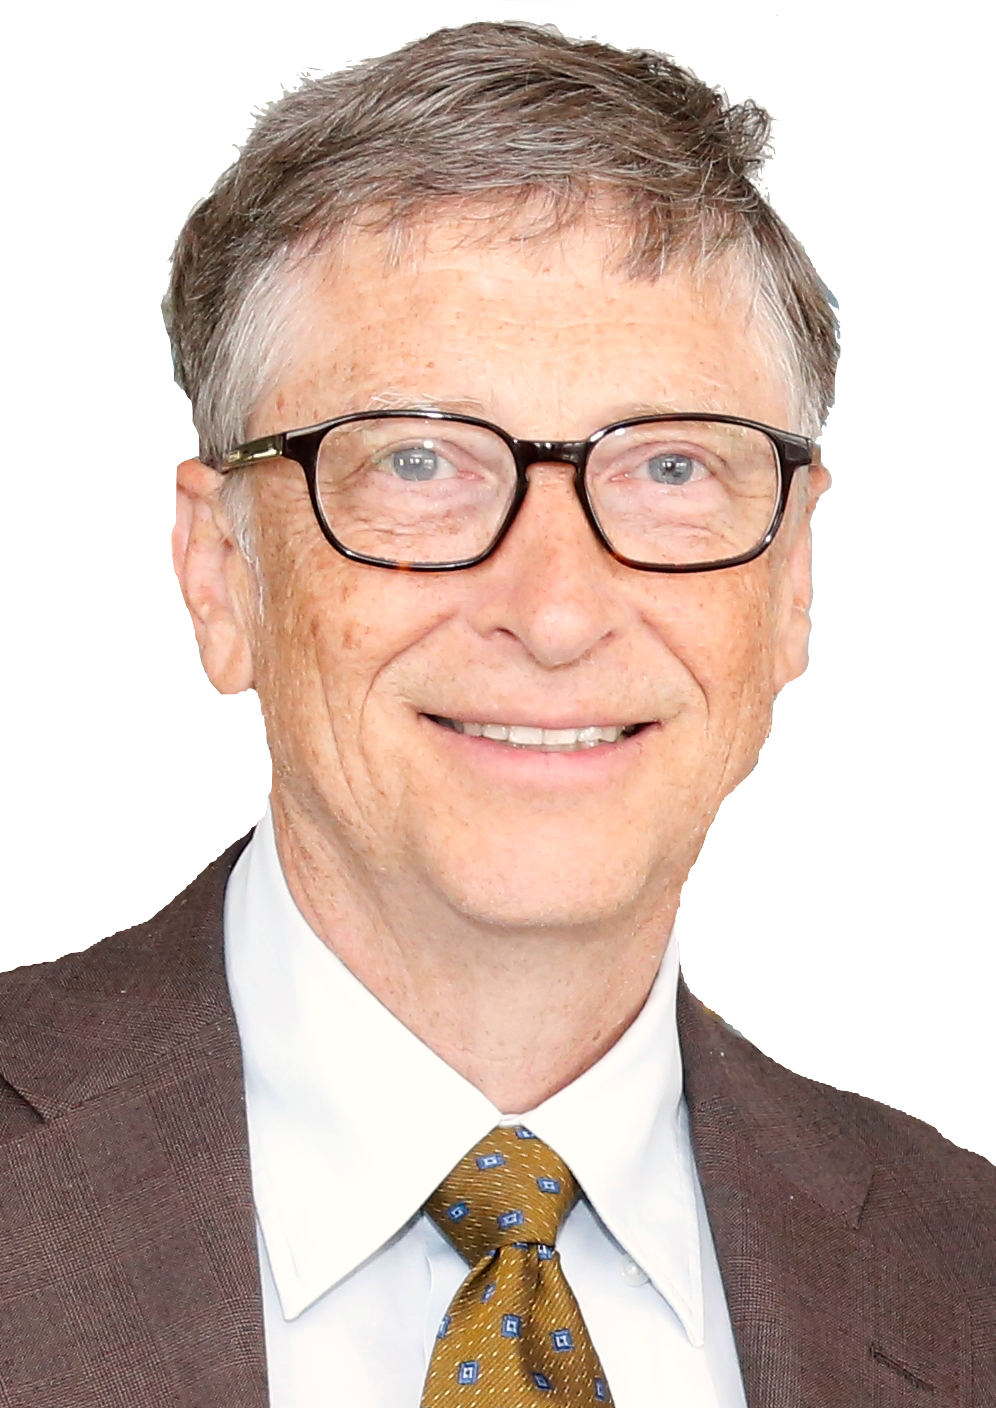 Bill Gates Portrait Smile PNG